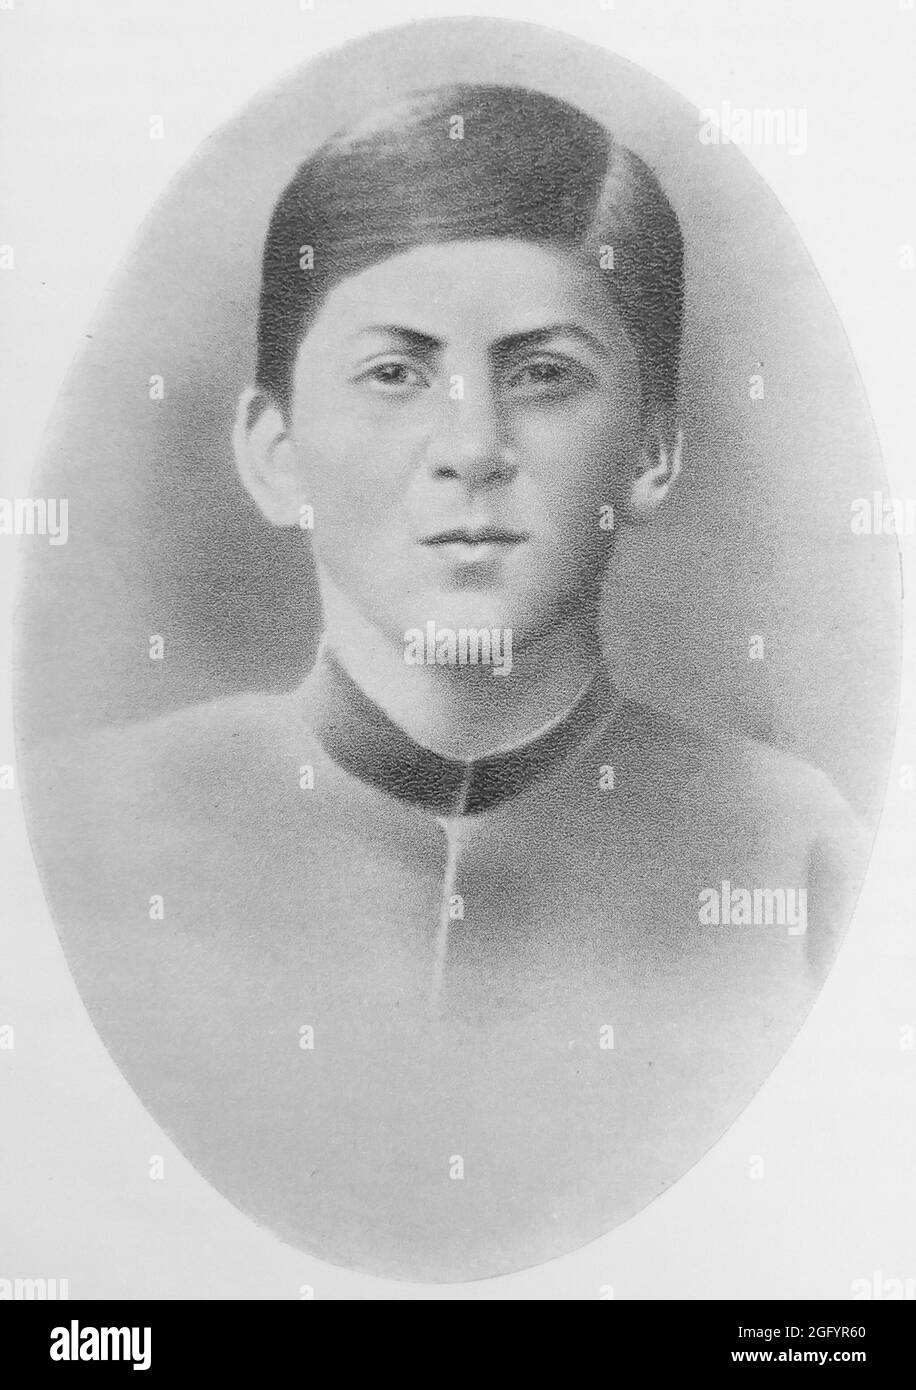 Ein Porträt von Jospeh Stalin (richtiger Name Joseph Dschugaschwili) im Jahr 1893 - er war 15 Jahre alt und Schüler der Gori Church School, Gori, Georgien Stockfoto